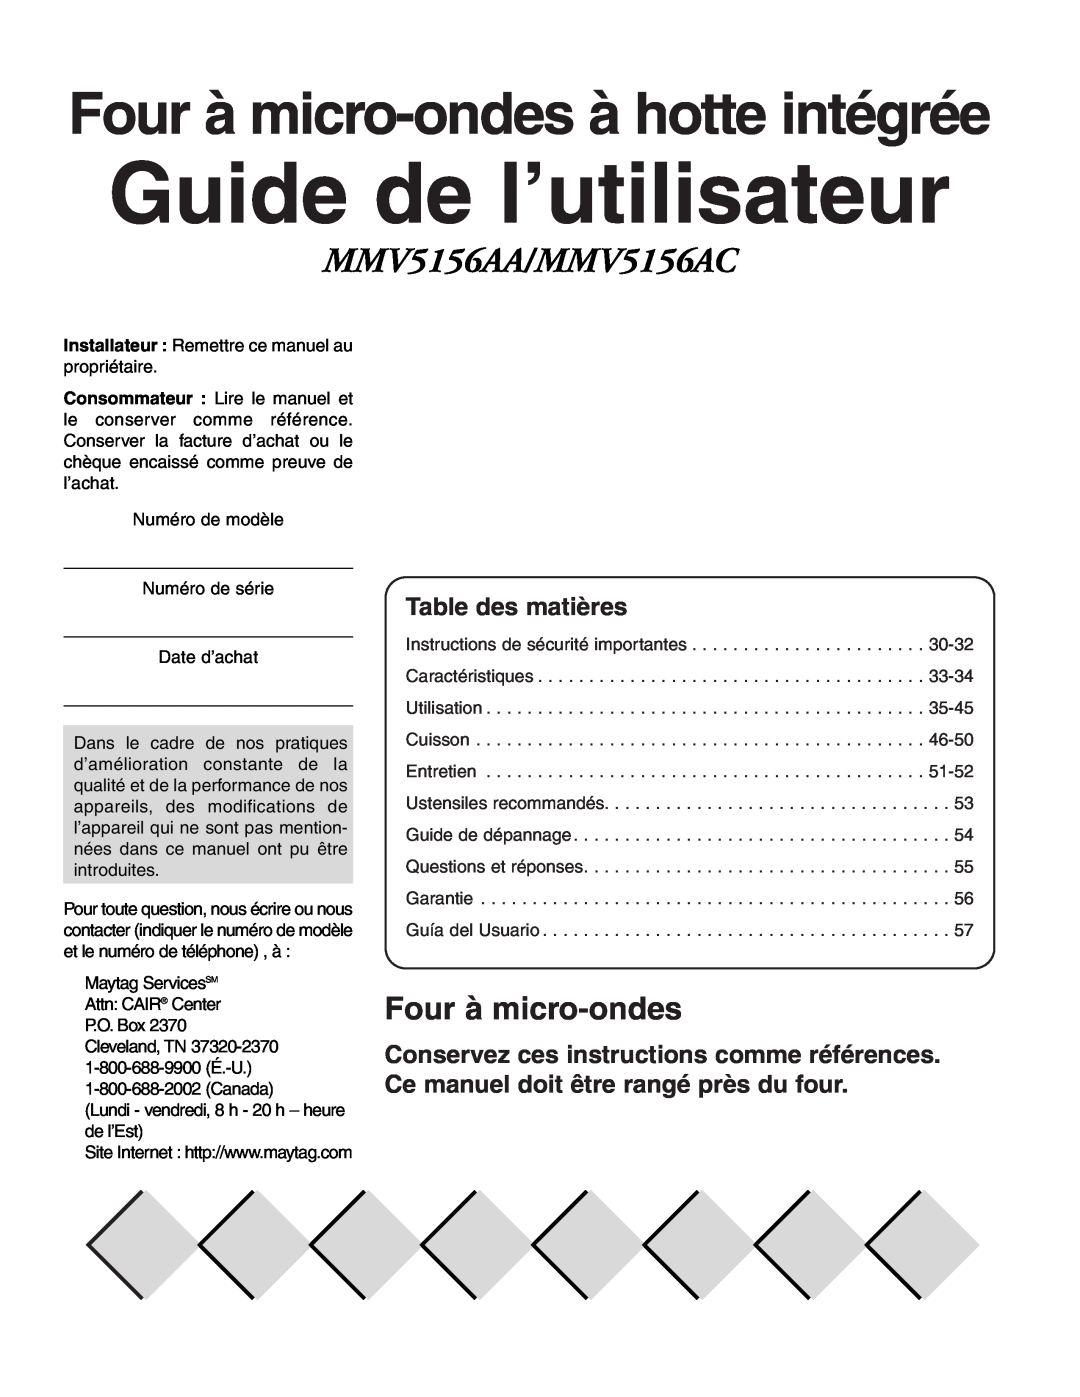 Maytag owner manual Guide de l’utilisateur, Four à micro-ondes à hotte intégrée, Table des matières, MMV5156AA/MMV5156AC 